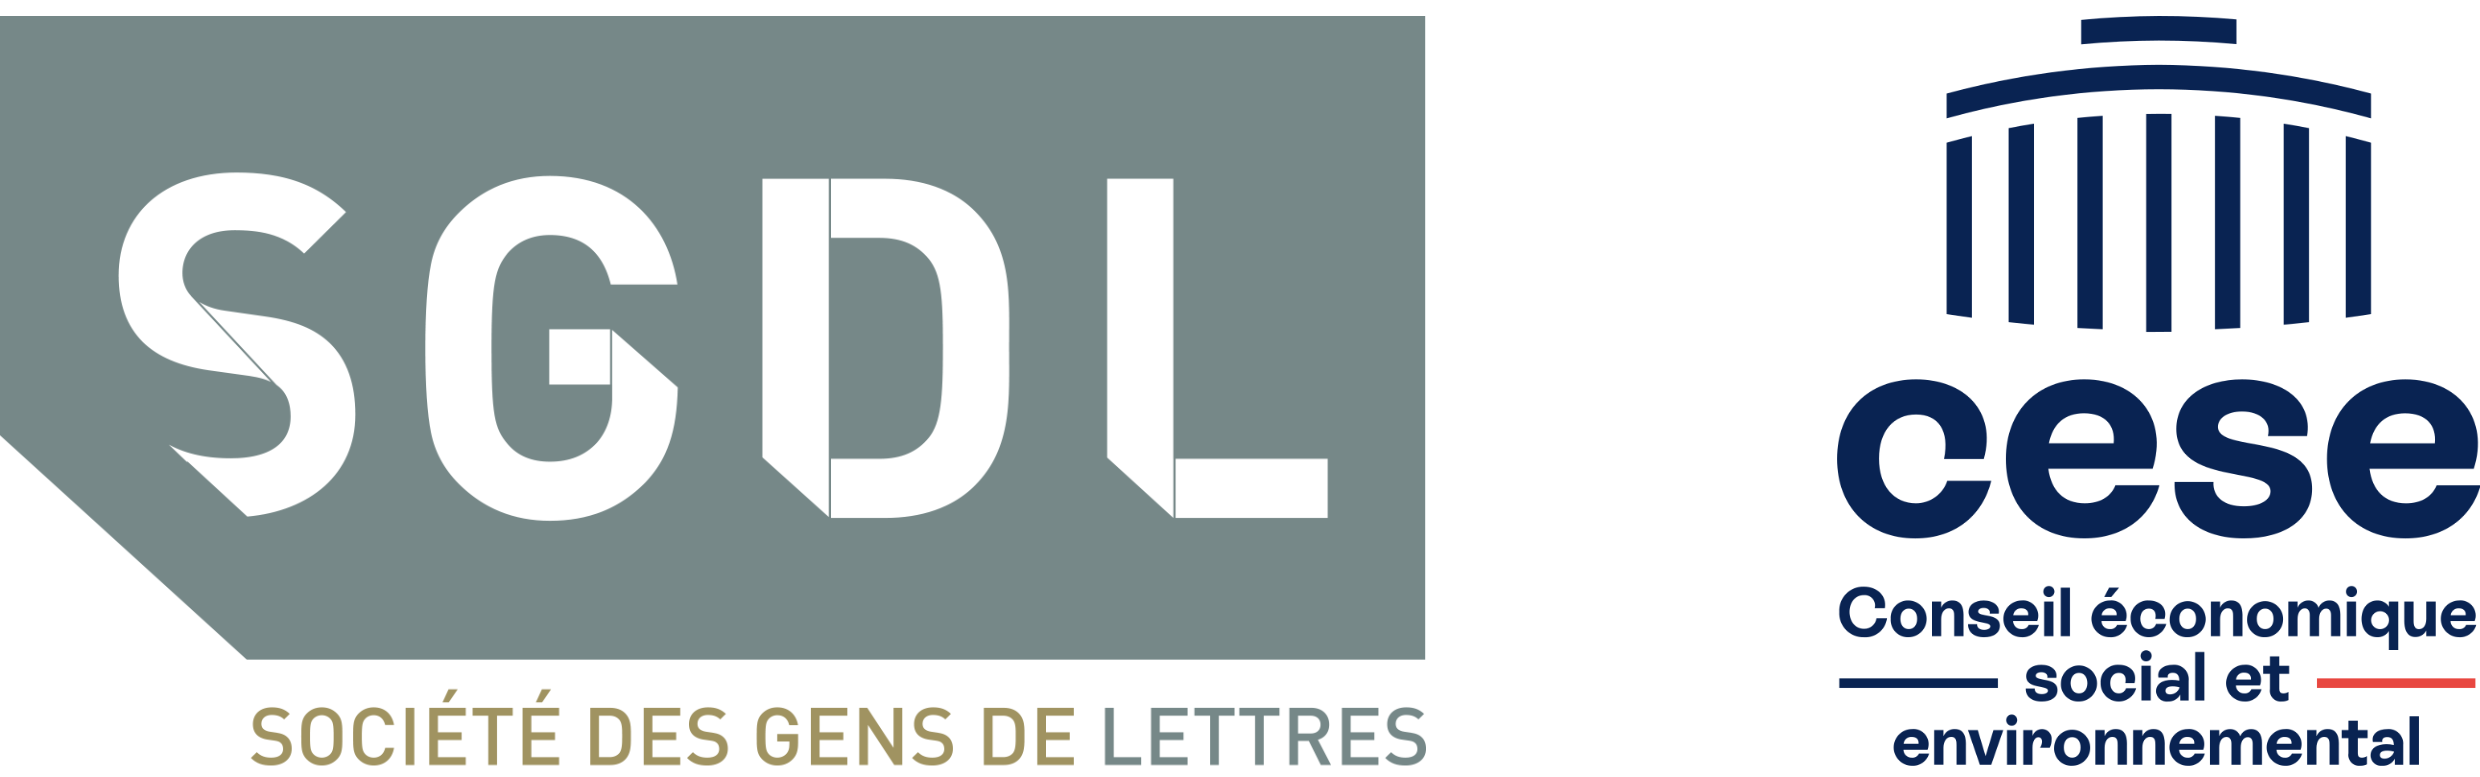 bandeau logos SGDL et CESE